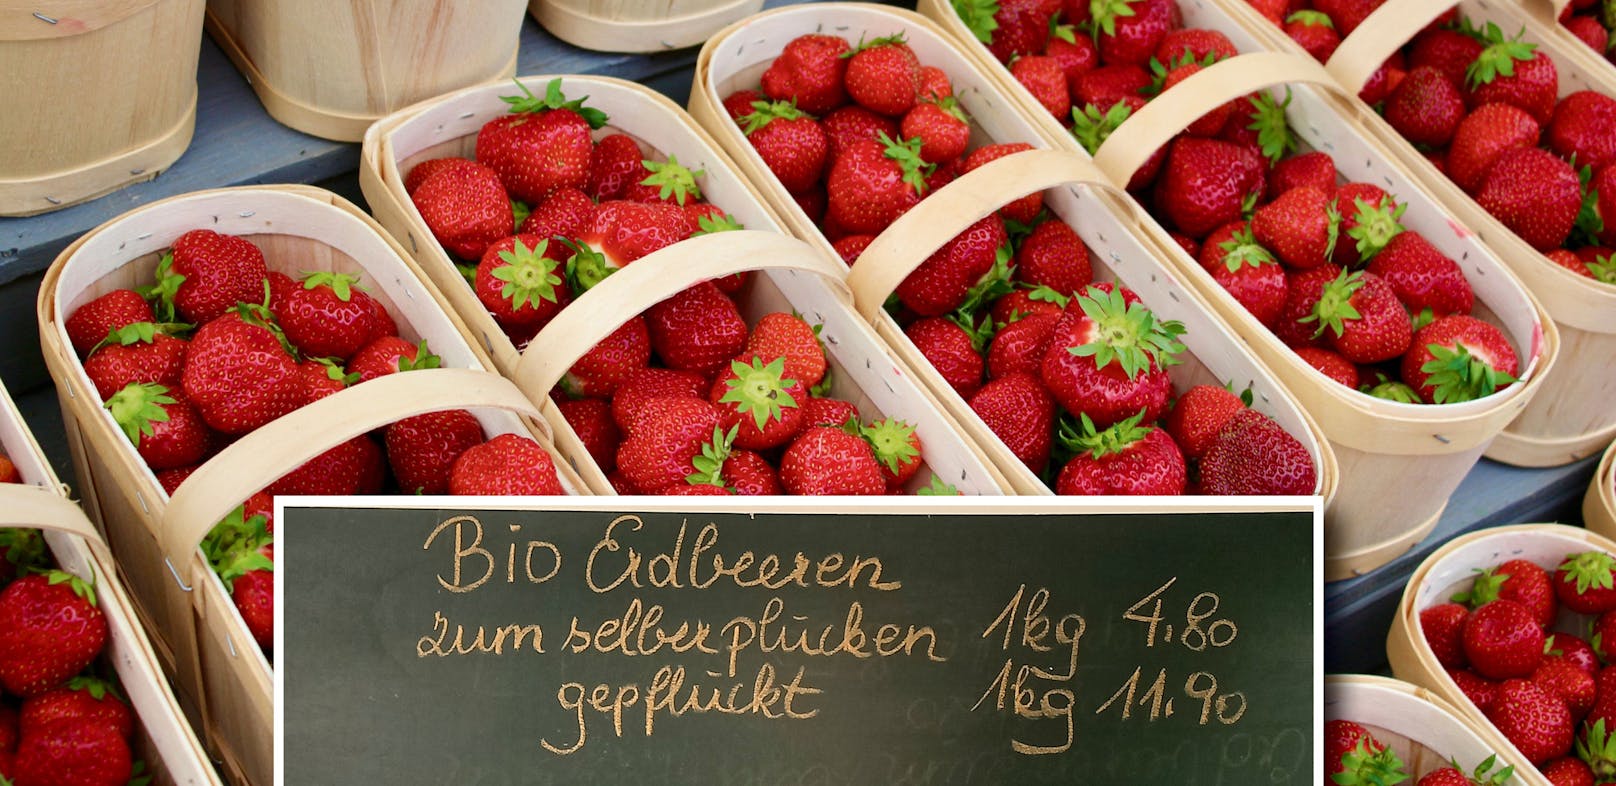 Selbst pflücken oder gepflückt kaufen? Beim Erdbeerpreis ist das ein gewaltiger Unterschied.